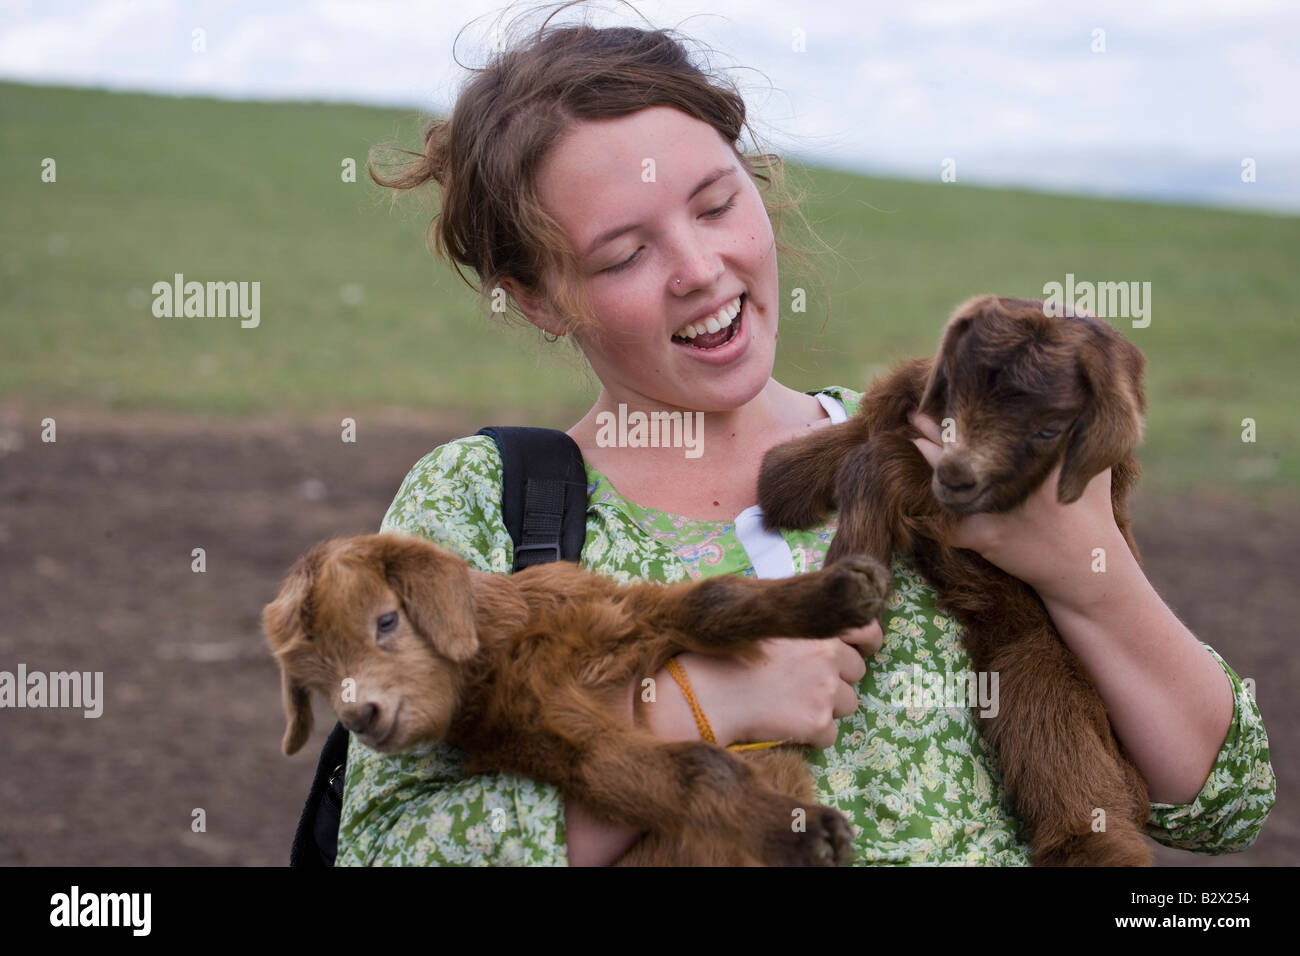 Mochilero femenino la celebración de dos cabras bebé en una visita a un ger Foto de stock